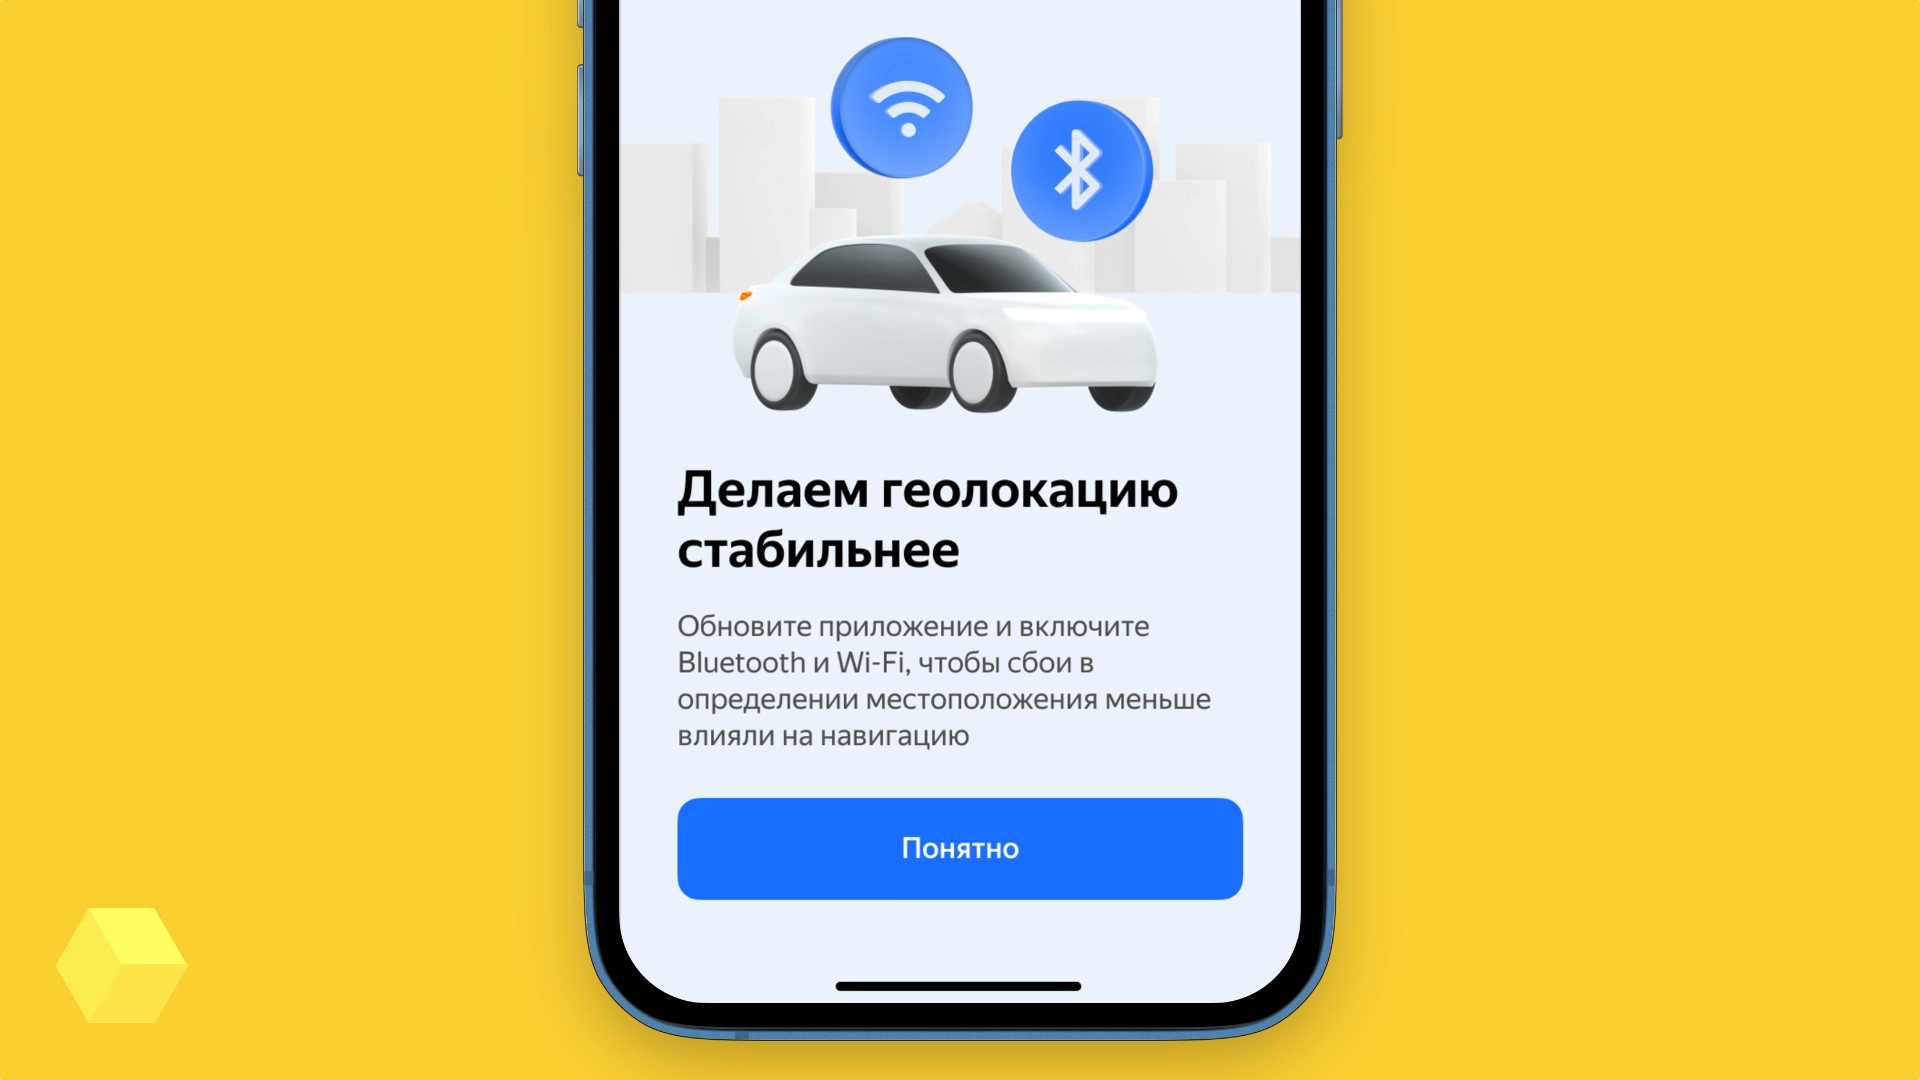 «Яндекс Карты» и «Навигатор» улучшили определение геопозиции в Москве при помощи Wi-Fi и Bluetooth